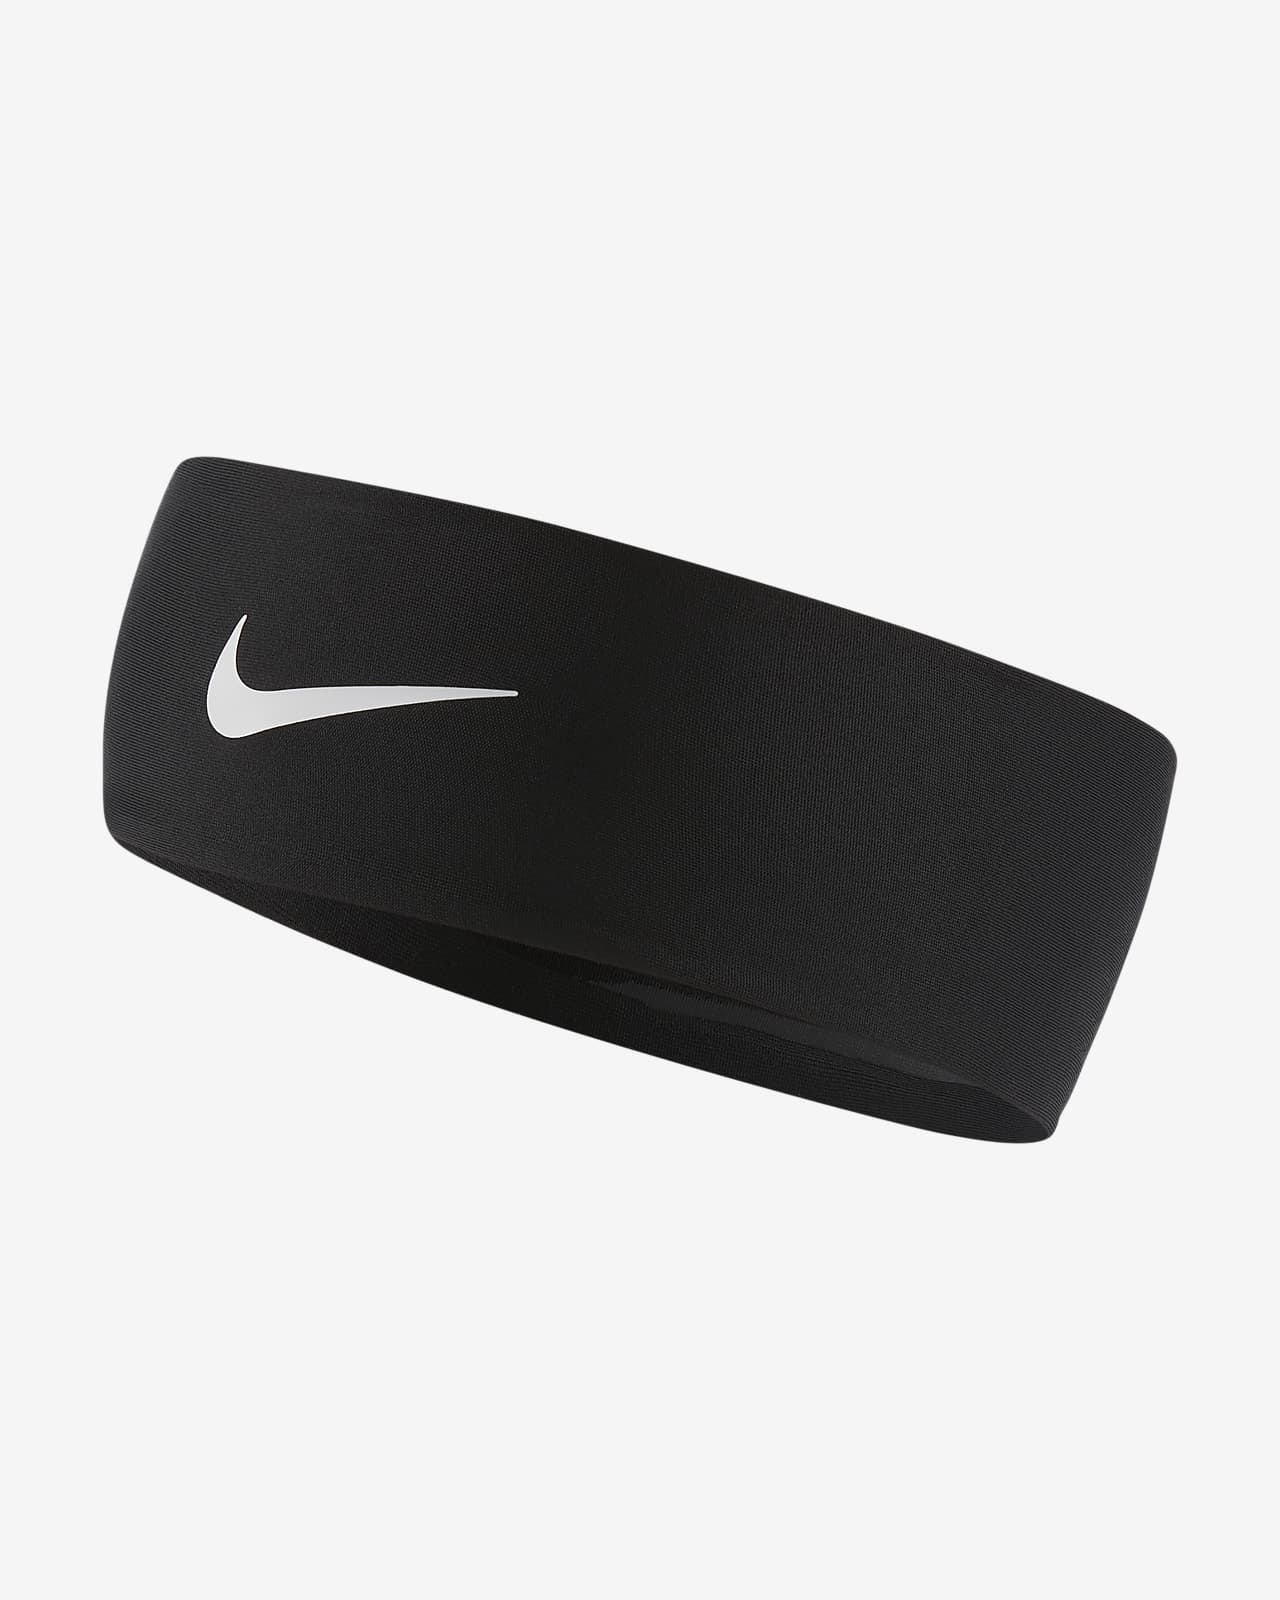 Les meilleurs bandeaux Nike pour le running. Nike LU